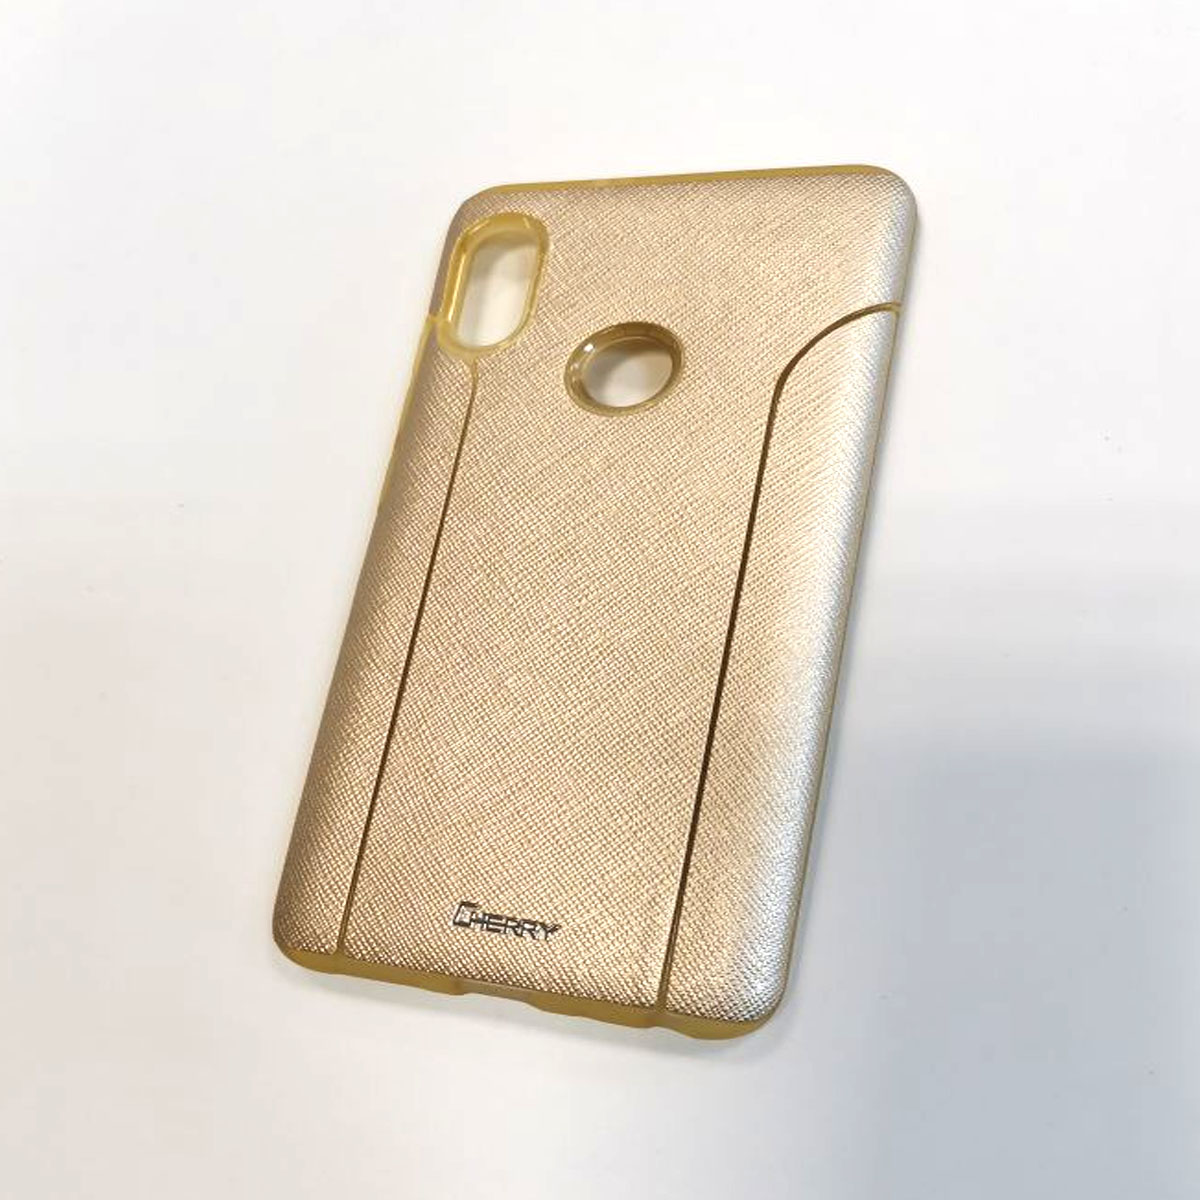 Чехол накладка для XIAOMI Redmi Note 5, Note 5 Pro, силикон, цвет золотистый